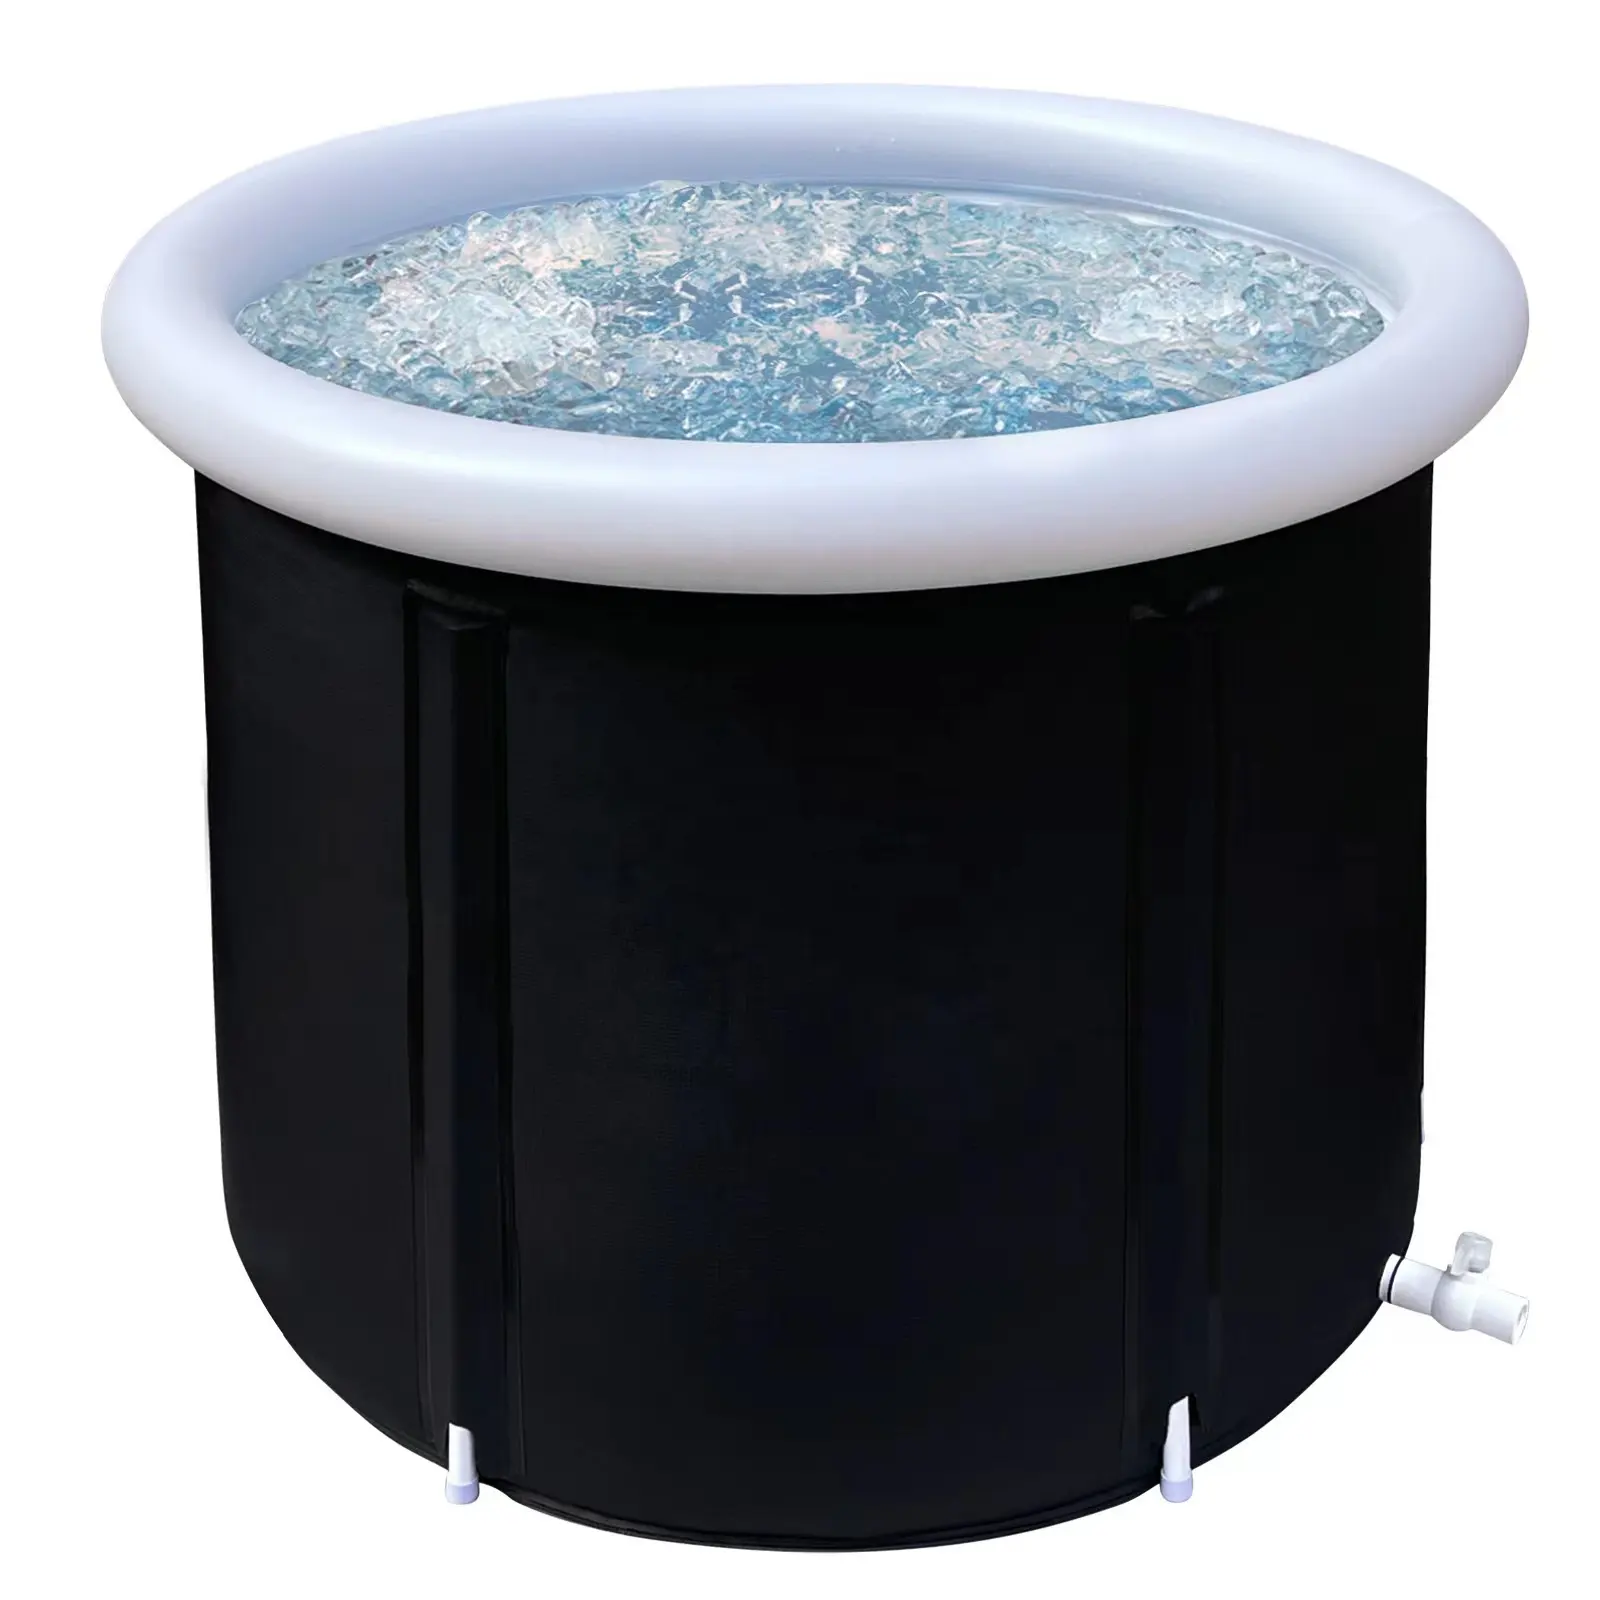 Großhandel Indoor Pool Waschbecken Bubble Foot Soak Eisbad Neue große kalte Tauch aufblasbare Kunststoff wanne